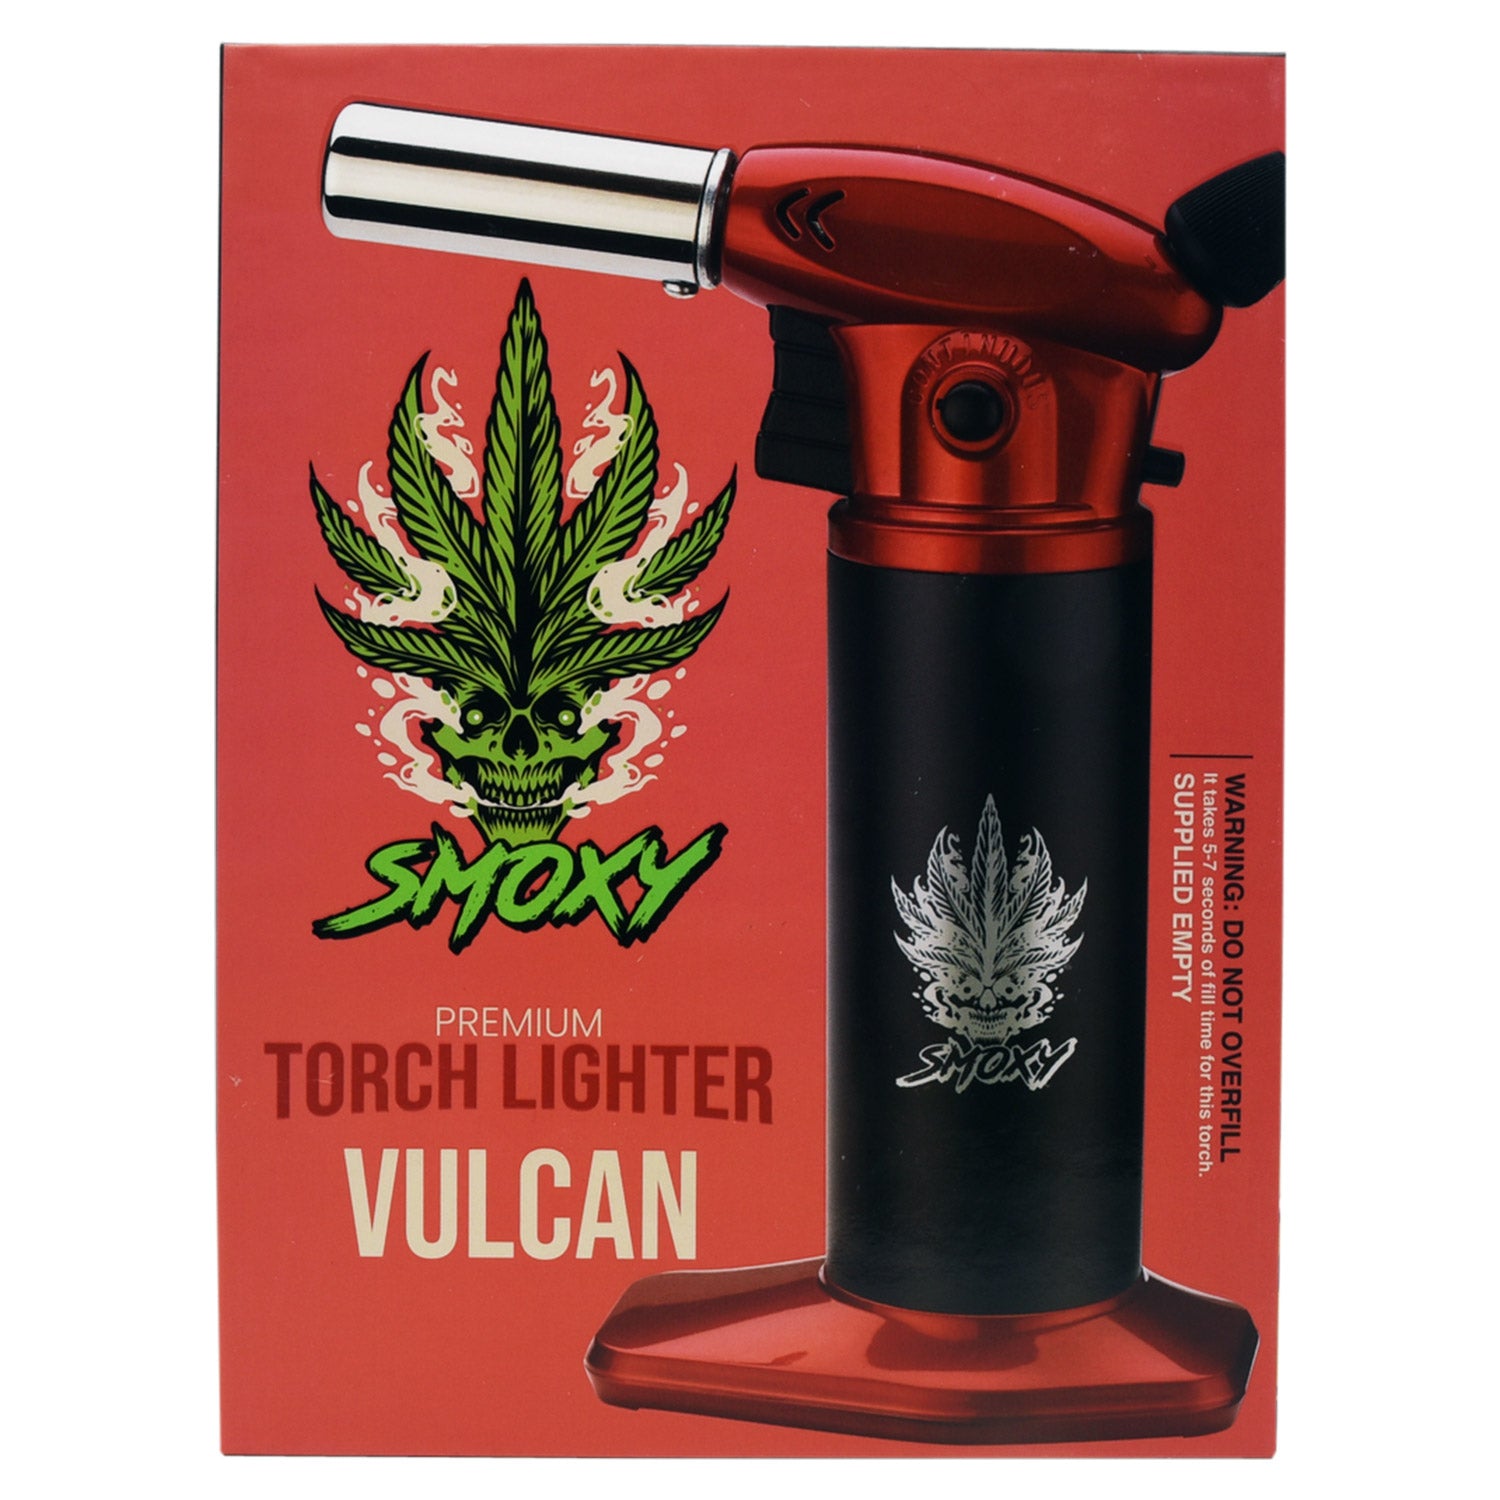 Smoxy Vulcan Torch